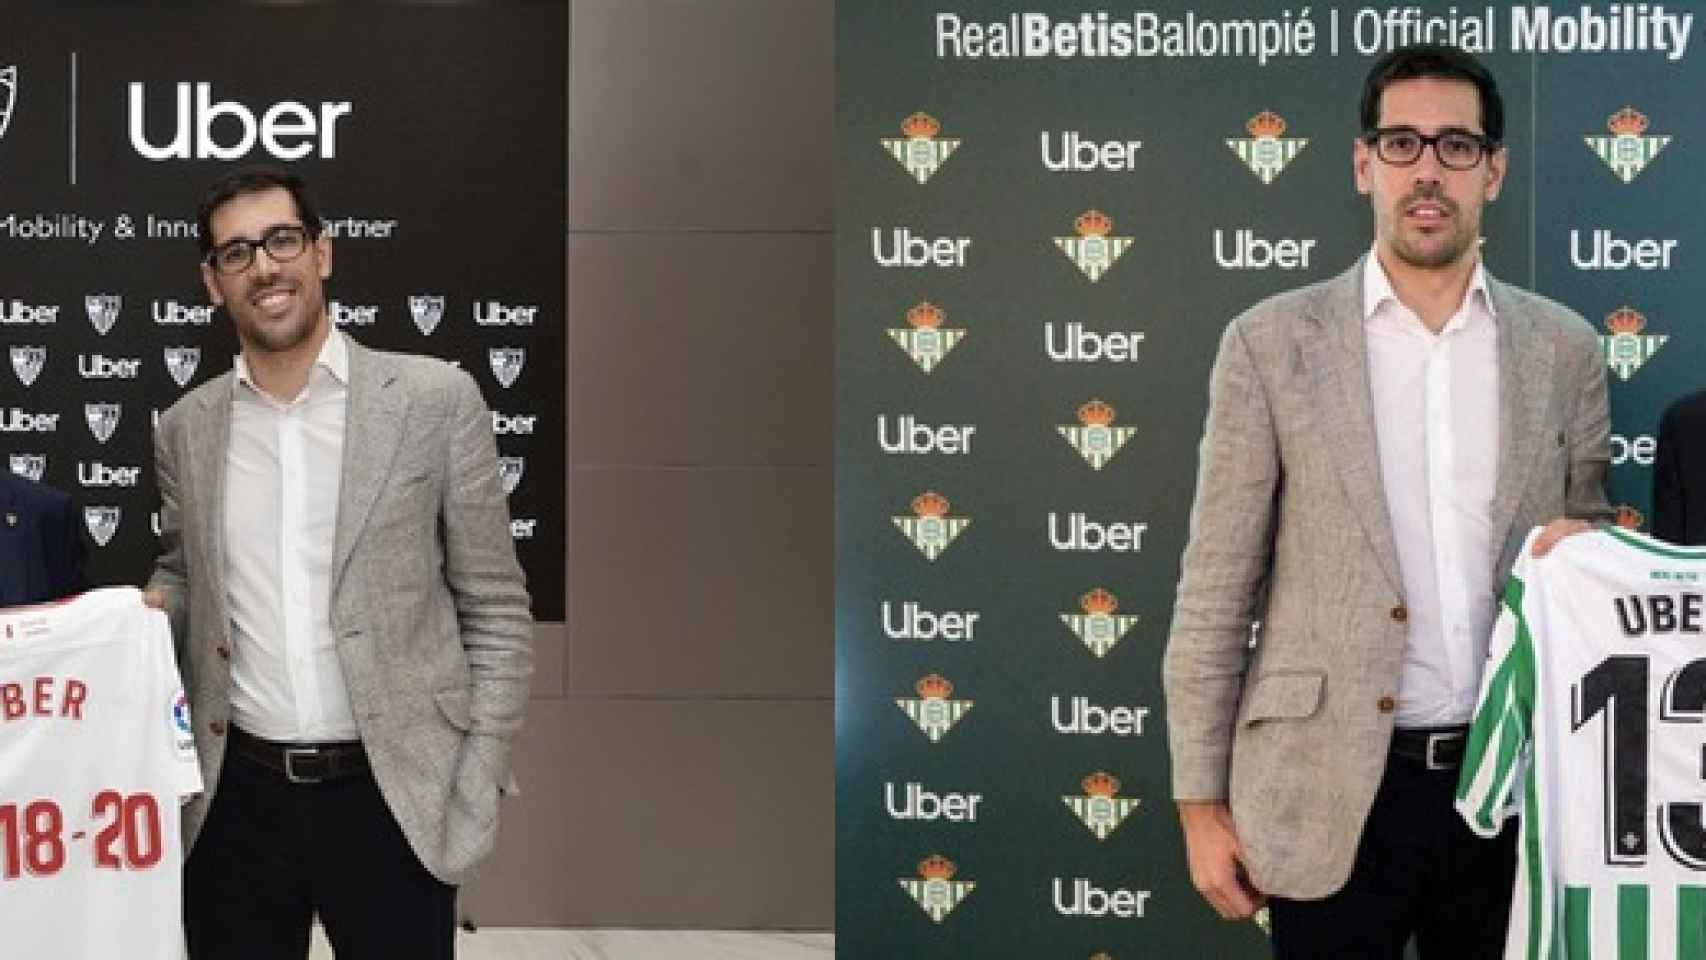 Acuerdo entre Betis y Sevilla con Uber.